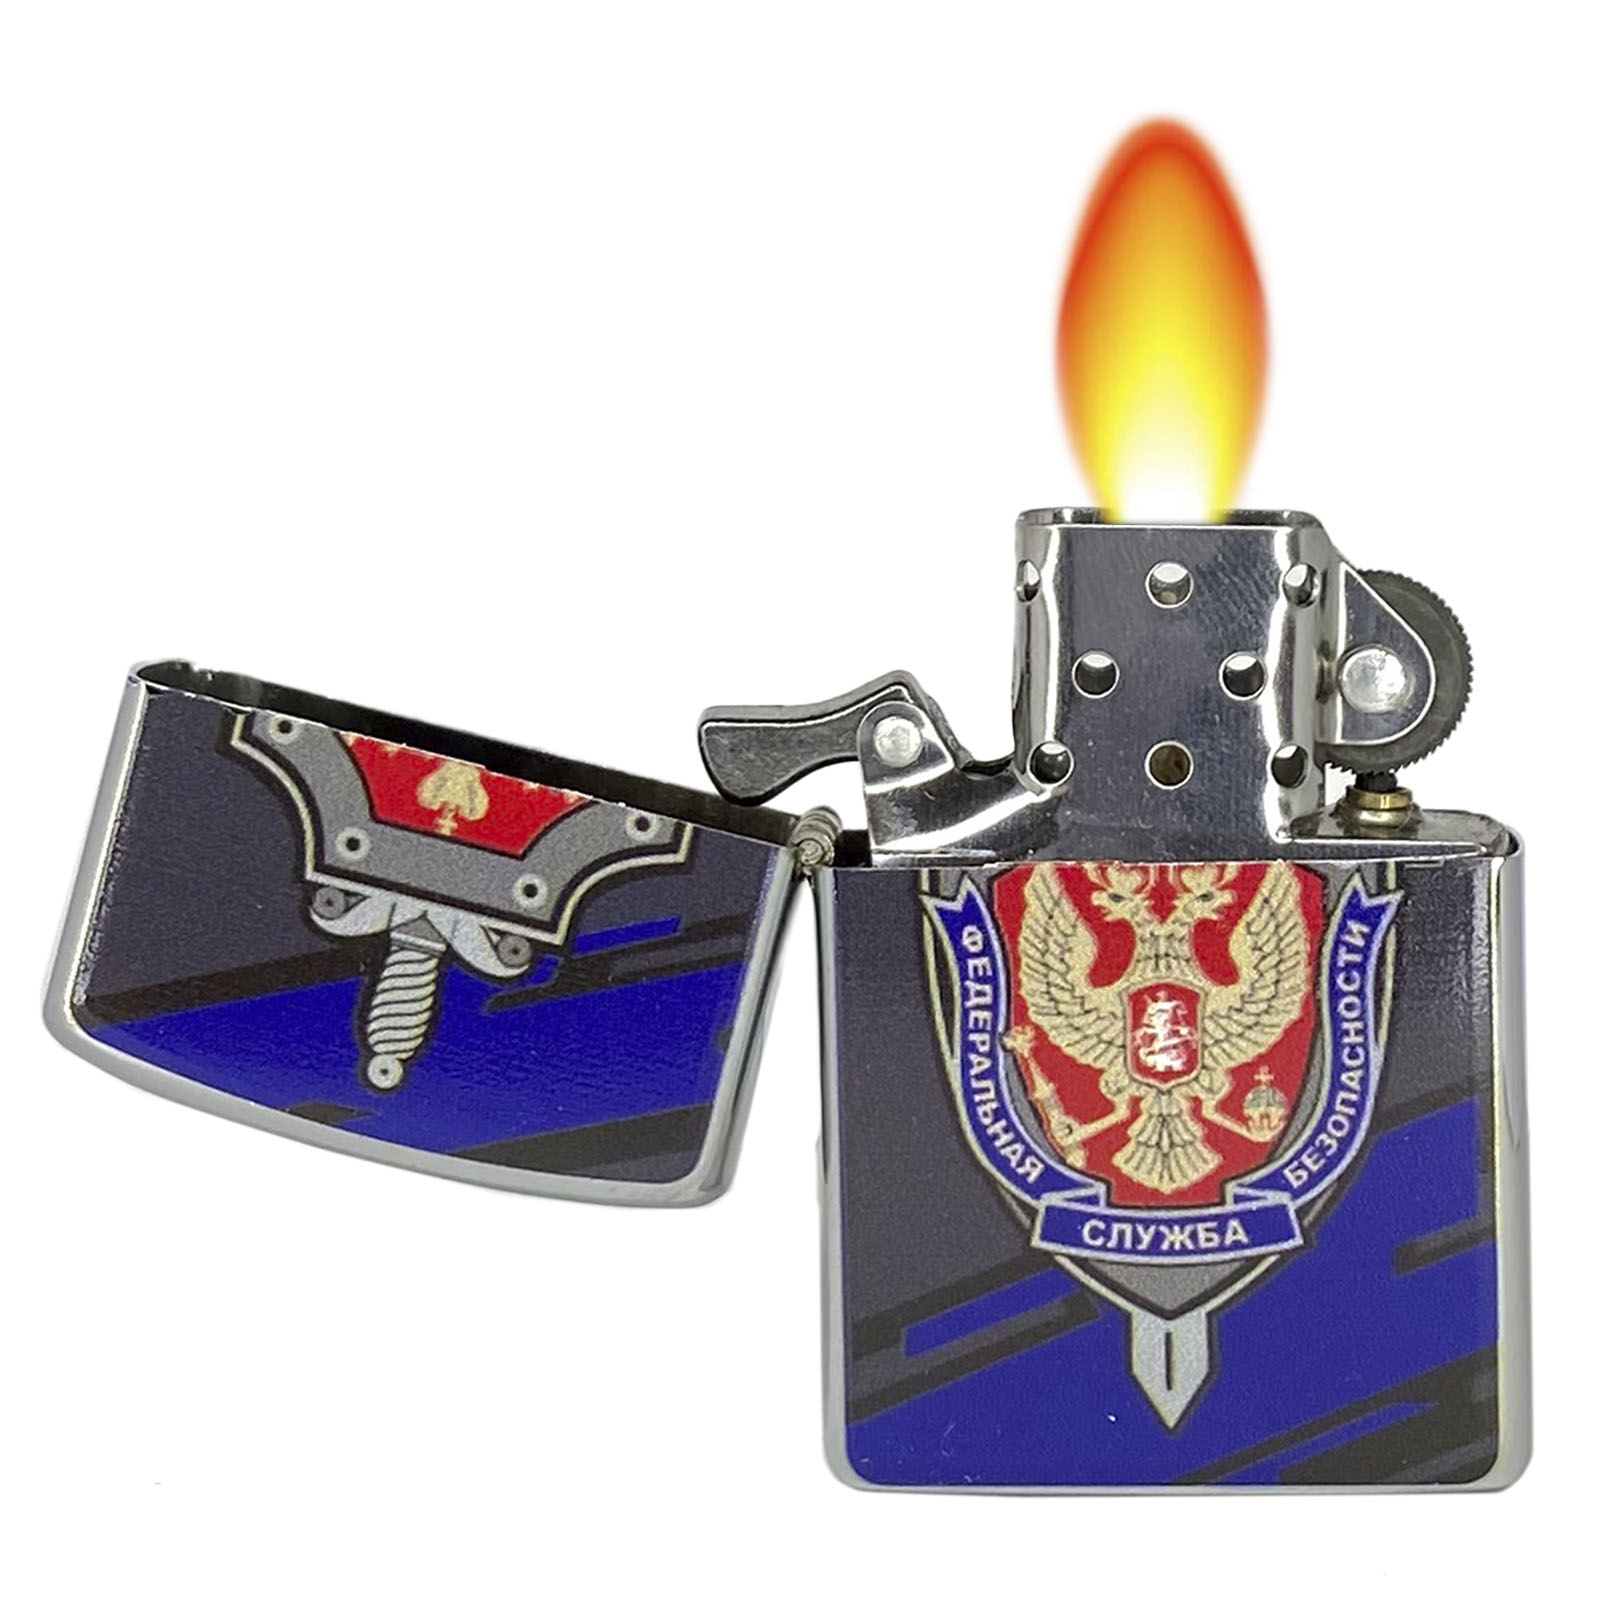 Купить оригинальную бензиновую зажигалку "ФСБ" с доставкой в любой город РФ